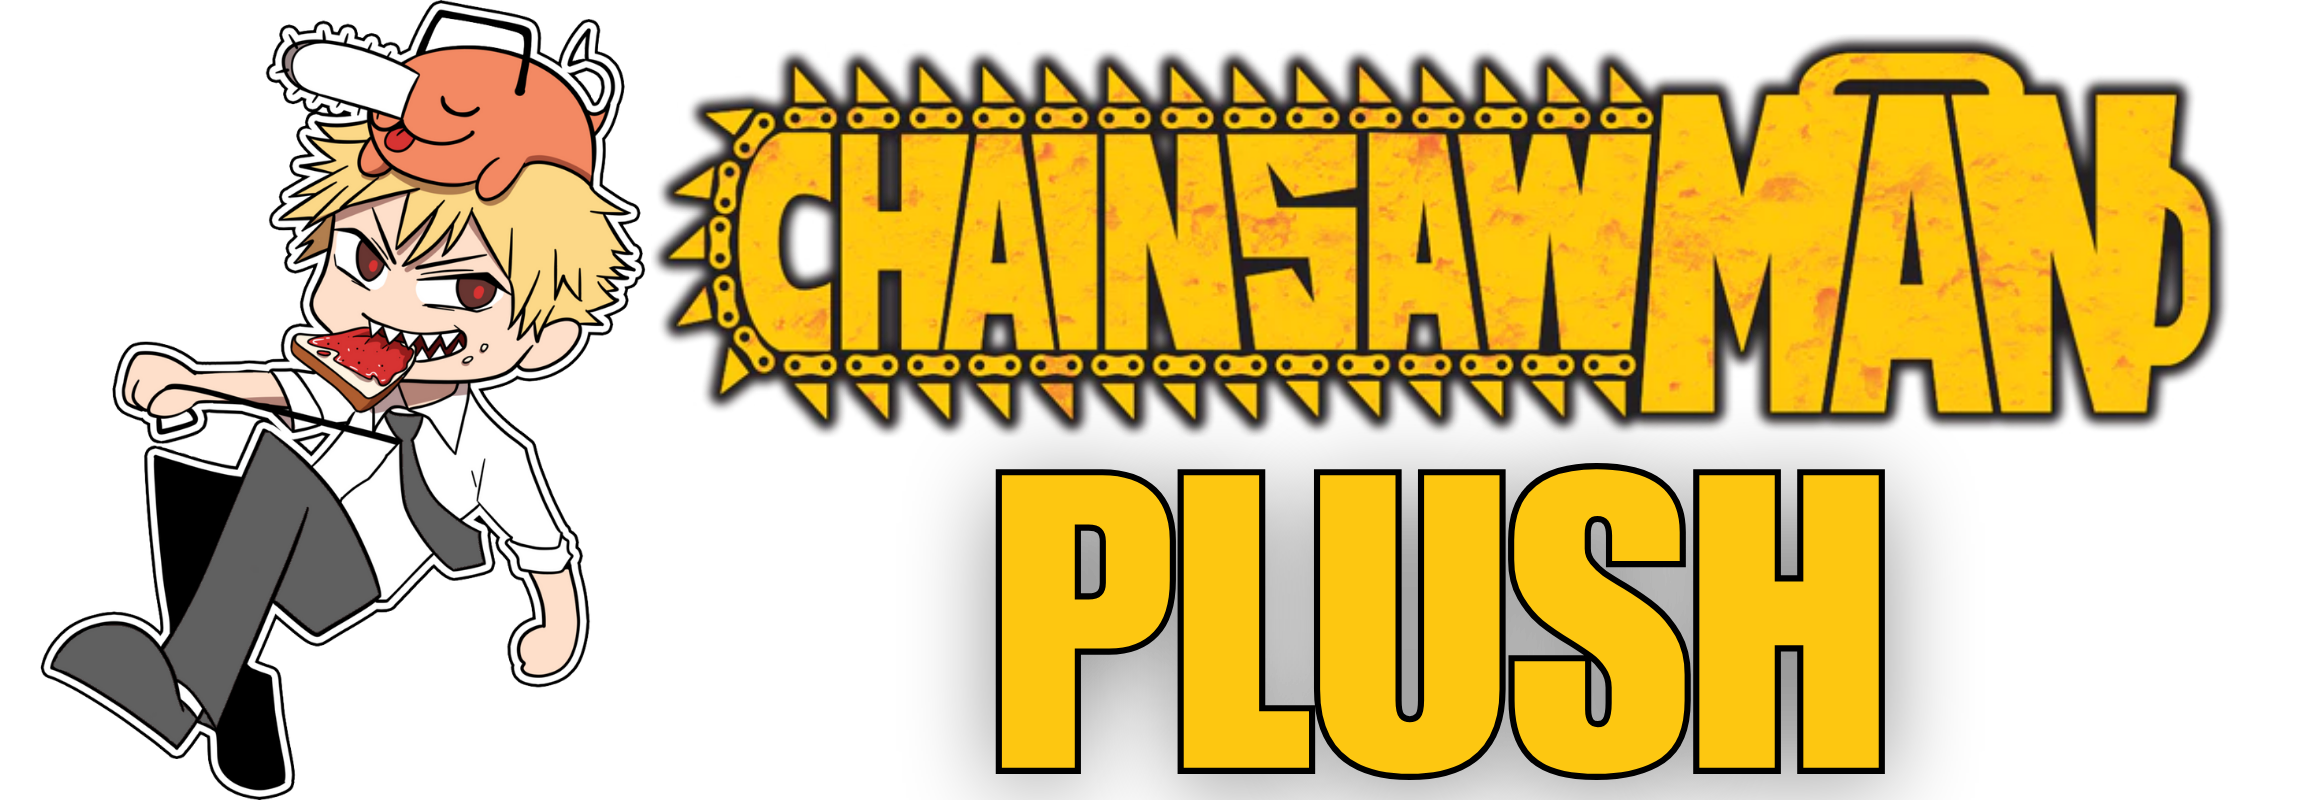 Chainsaw Man Plush